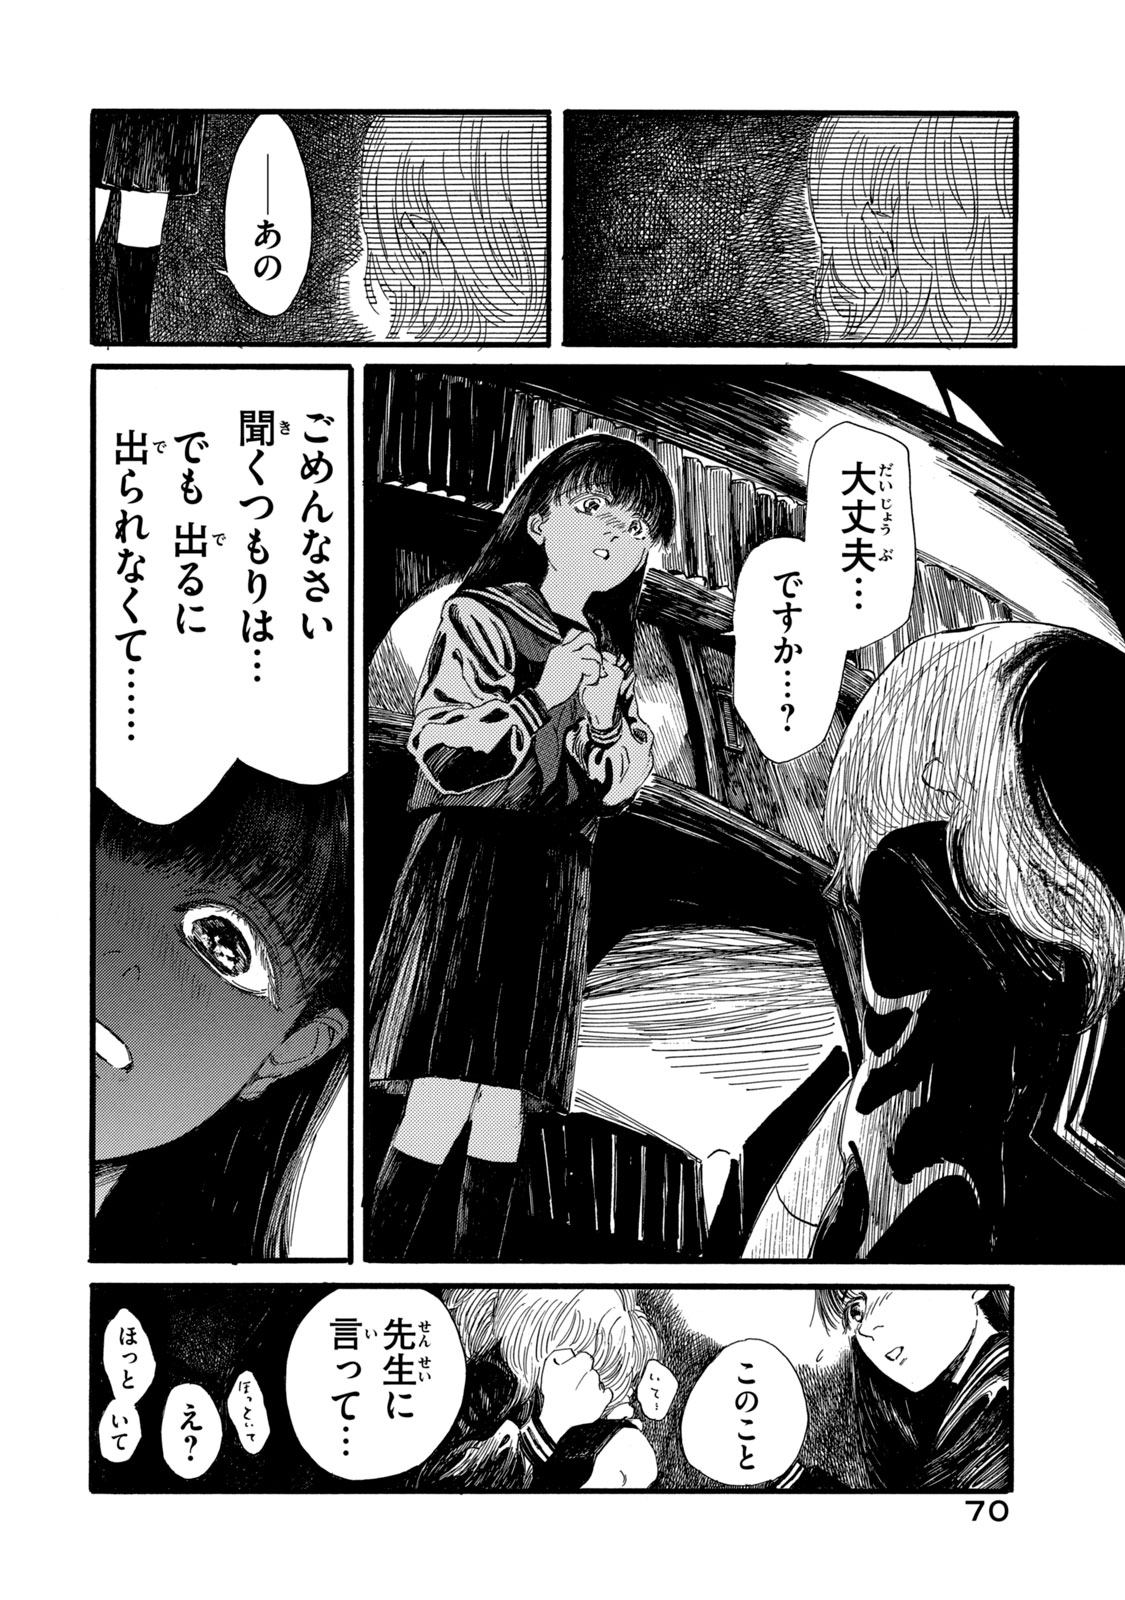 Watashi no Hara no Naka no Bakemono - Chapter 2 - Page 18